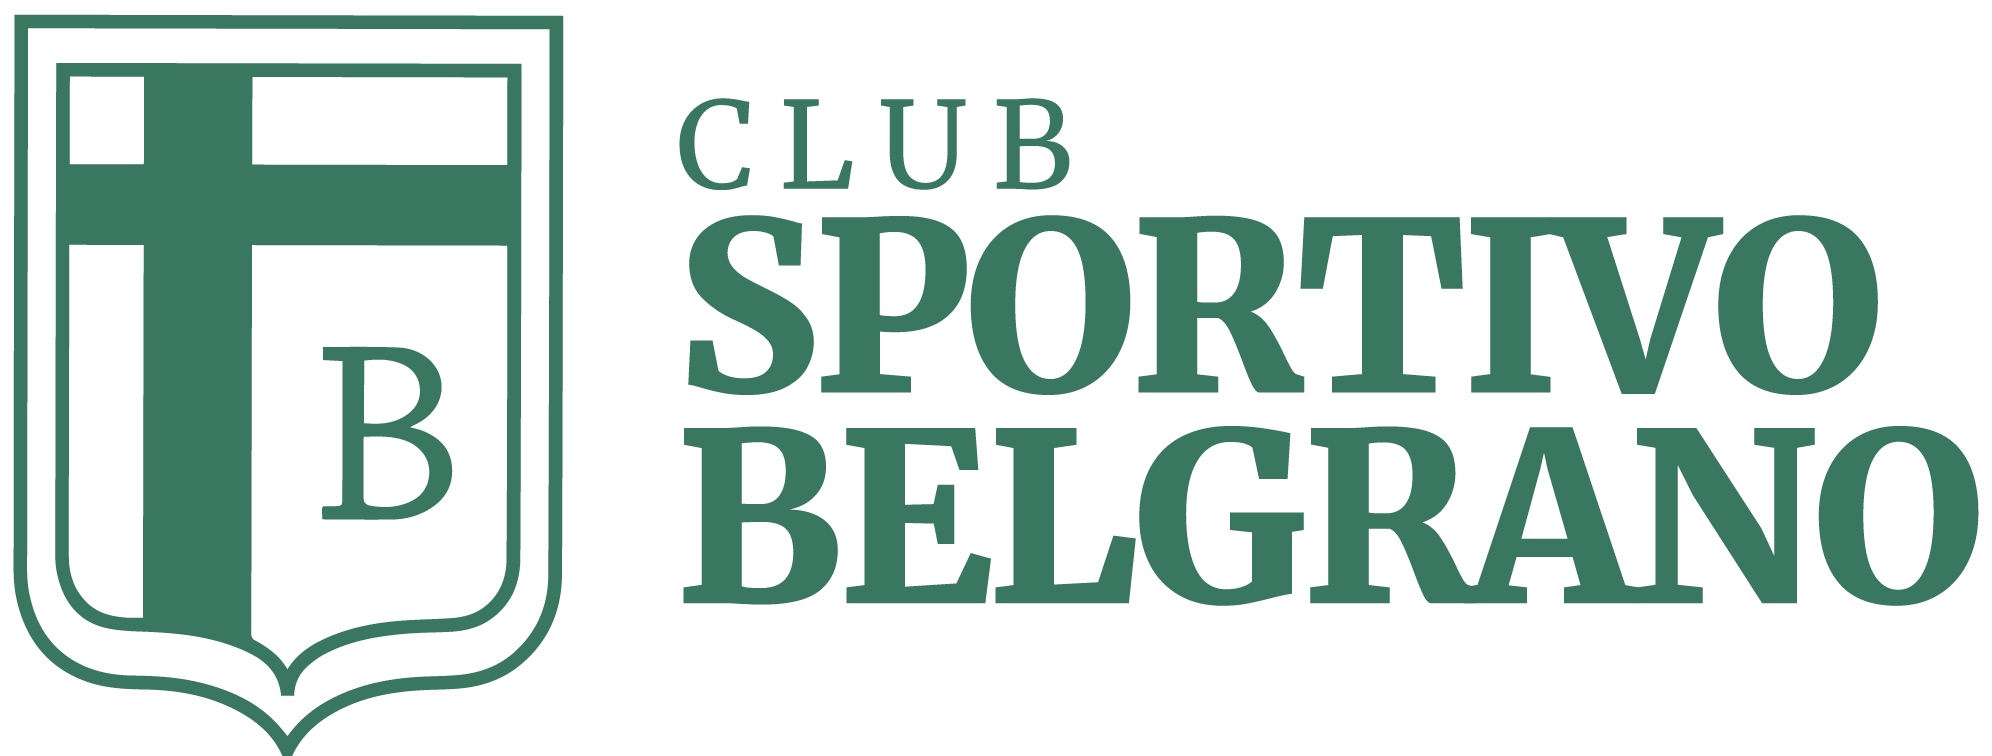 Club Sportivo Belgrano